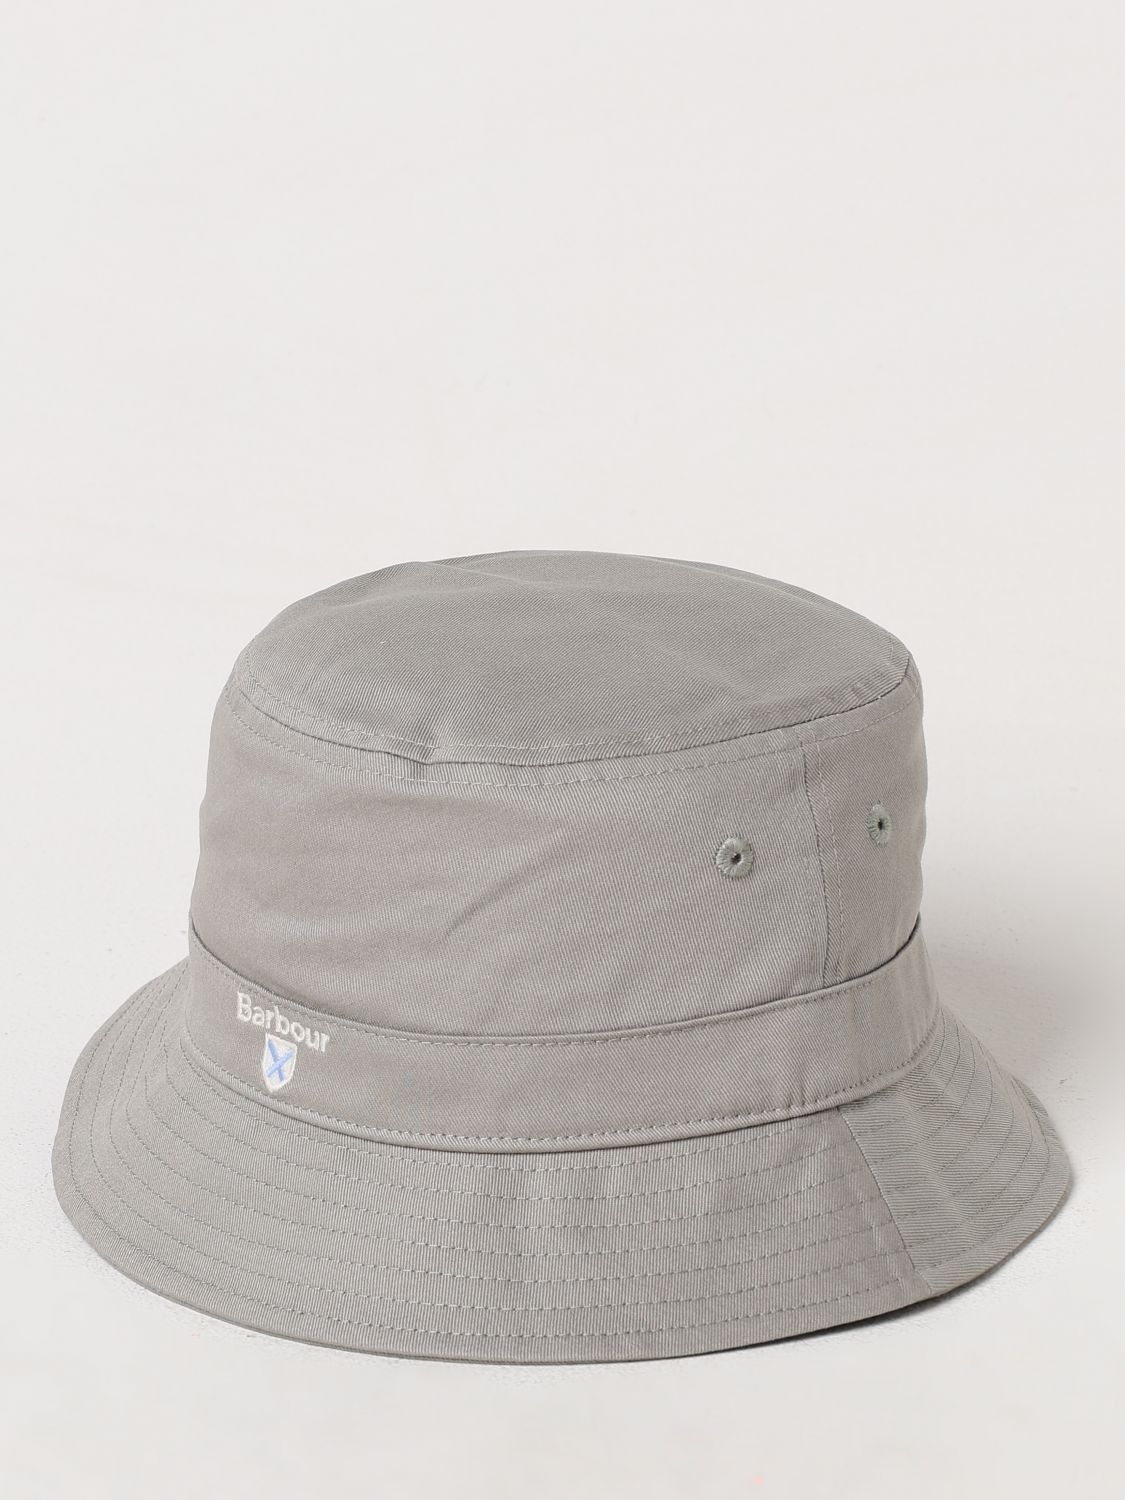 Barbour Hat BARBOUR Men color Military